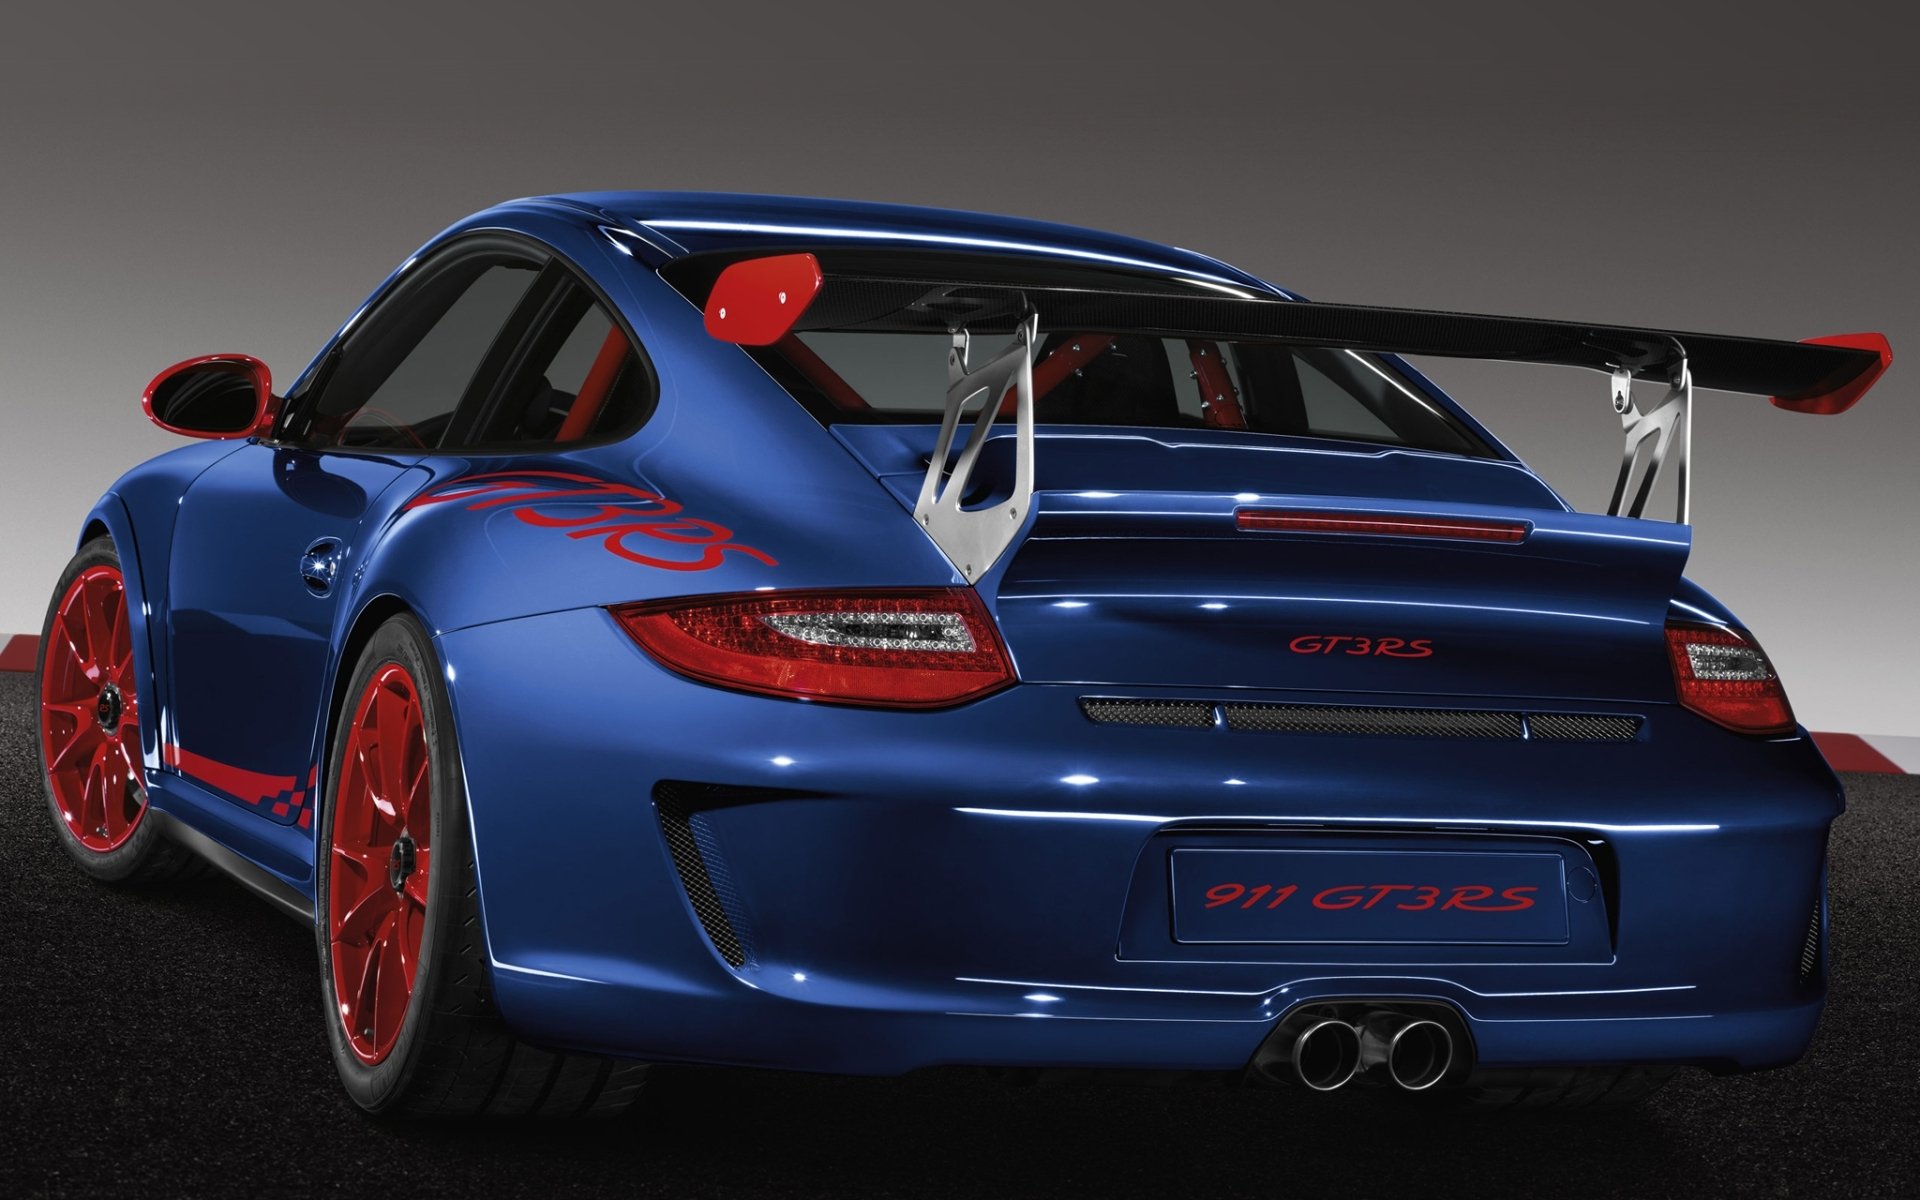 Porsche разрабатывает новые 911 gt3 - картинки в разделе Абс